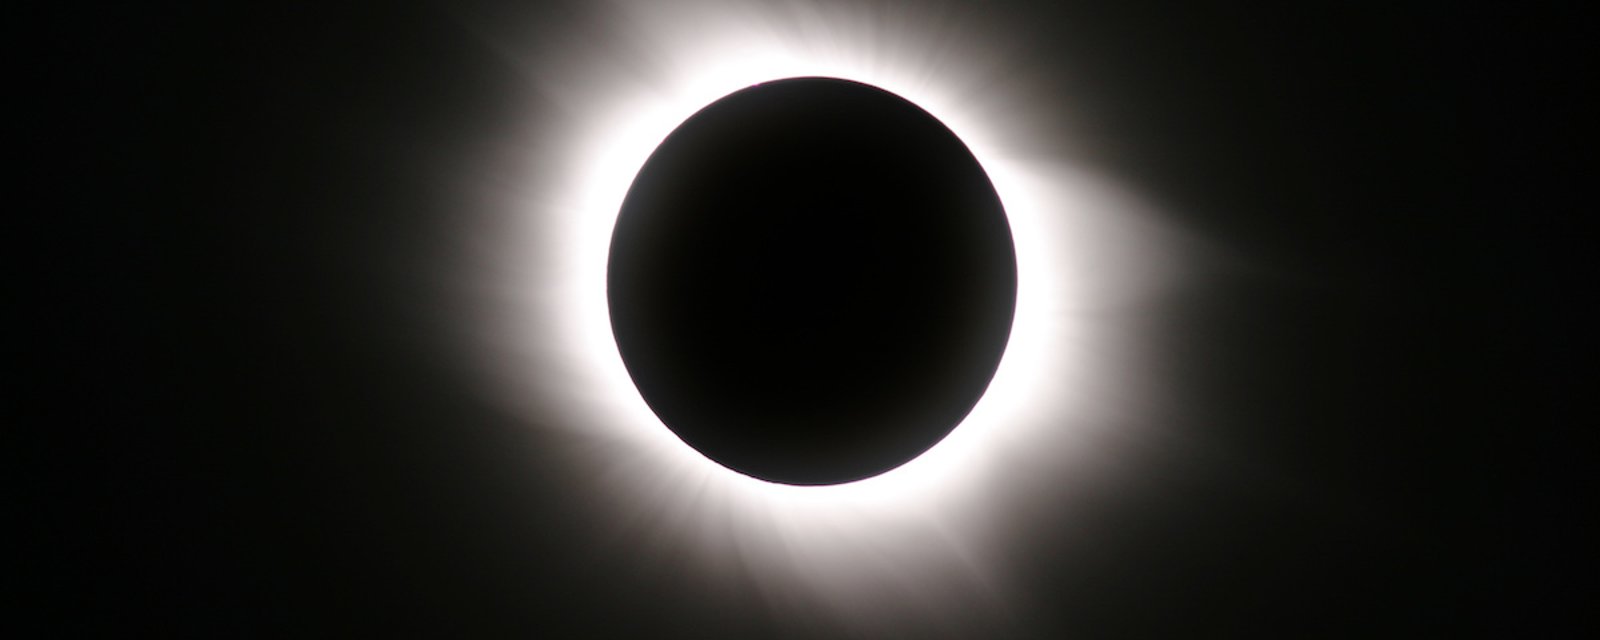 Des écoles pourraient être fermées pour l’éclipse du 8 avril prochain 